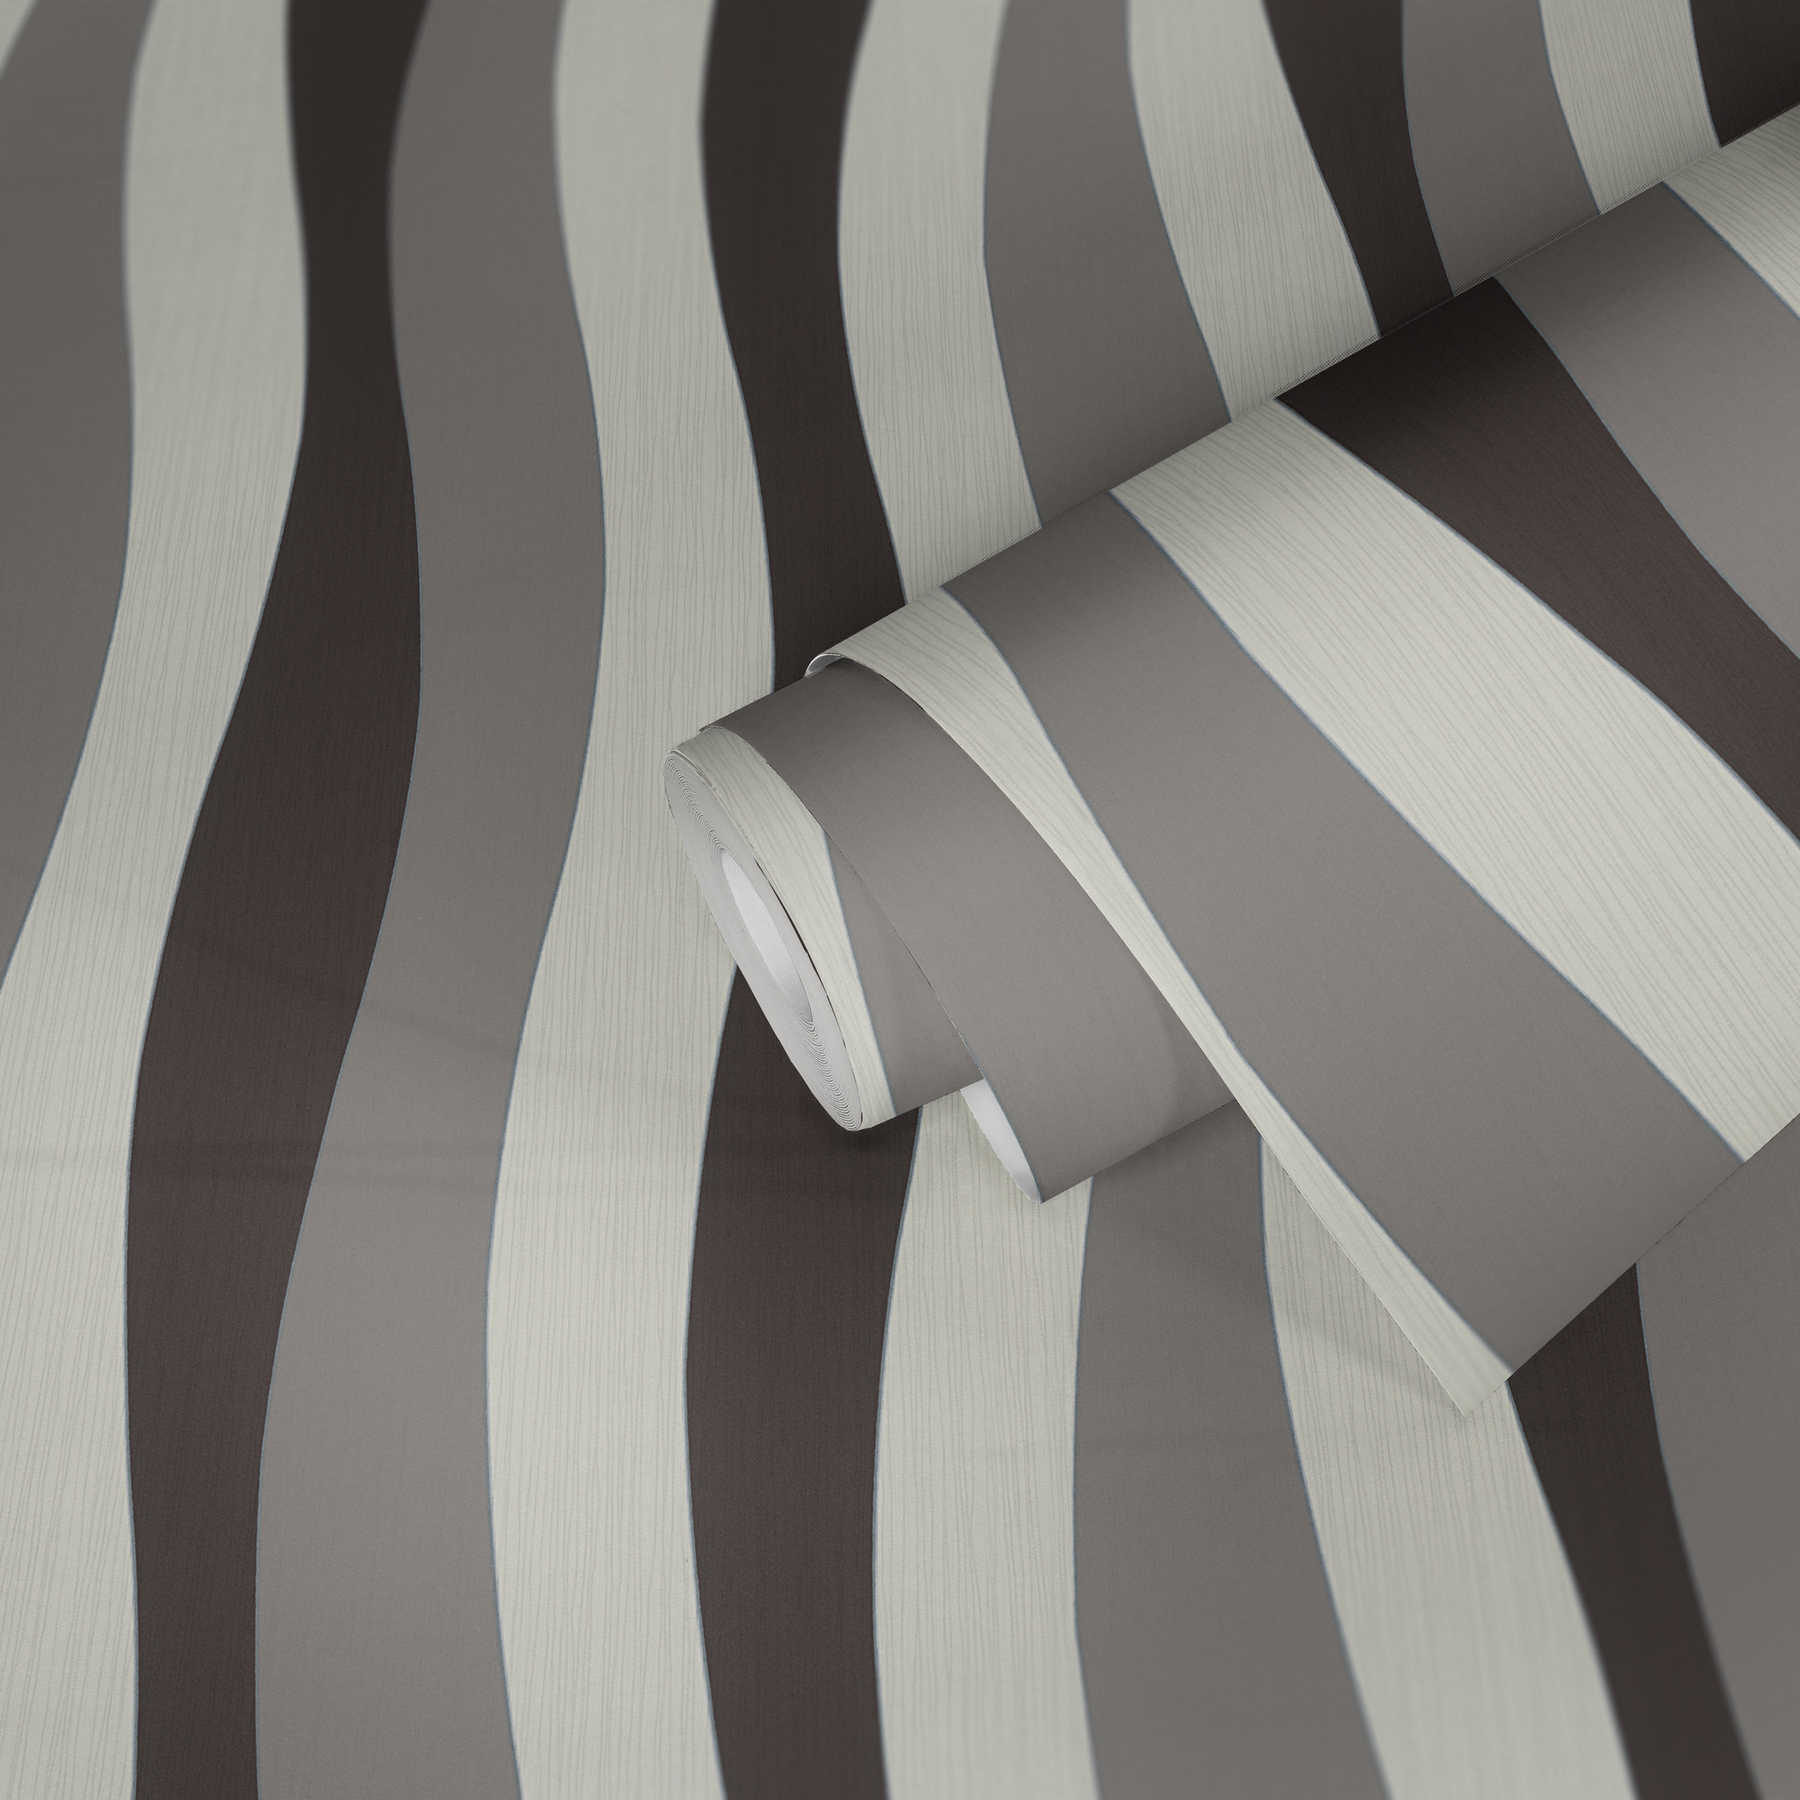             Wallpaper lines design with metallic effect - cream, grey
        